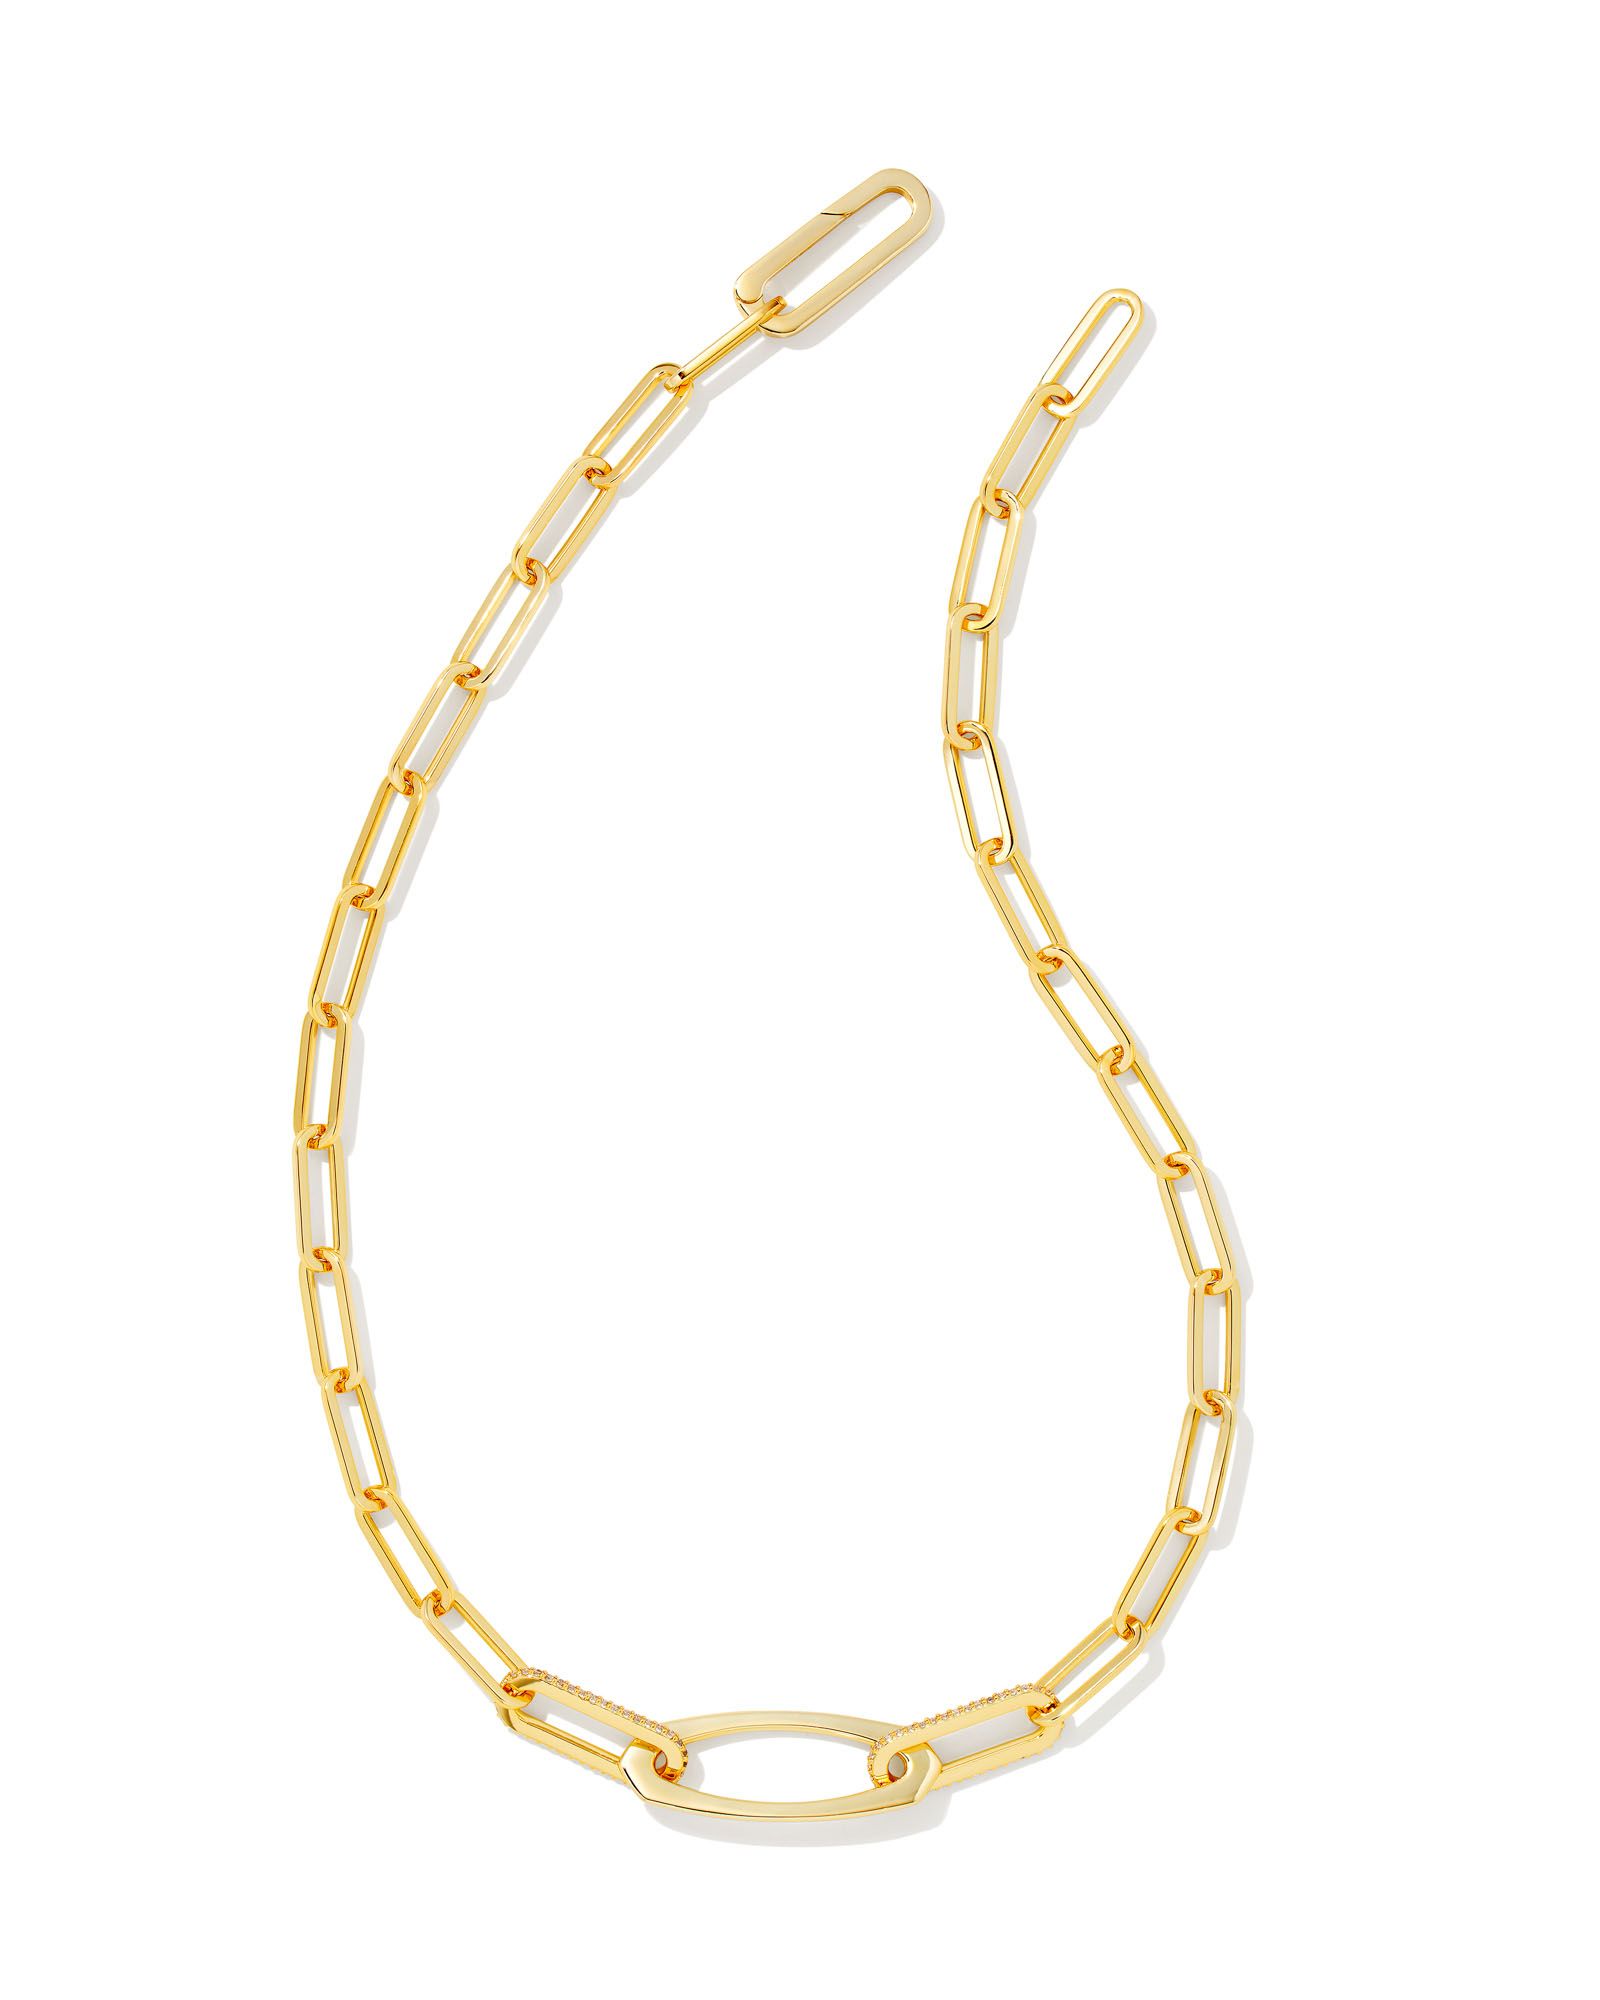 Adeline Chain Necklace in Gold | Kendra Scott | Kendra Scott